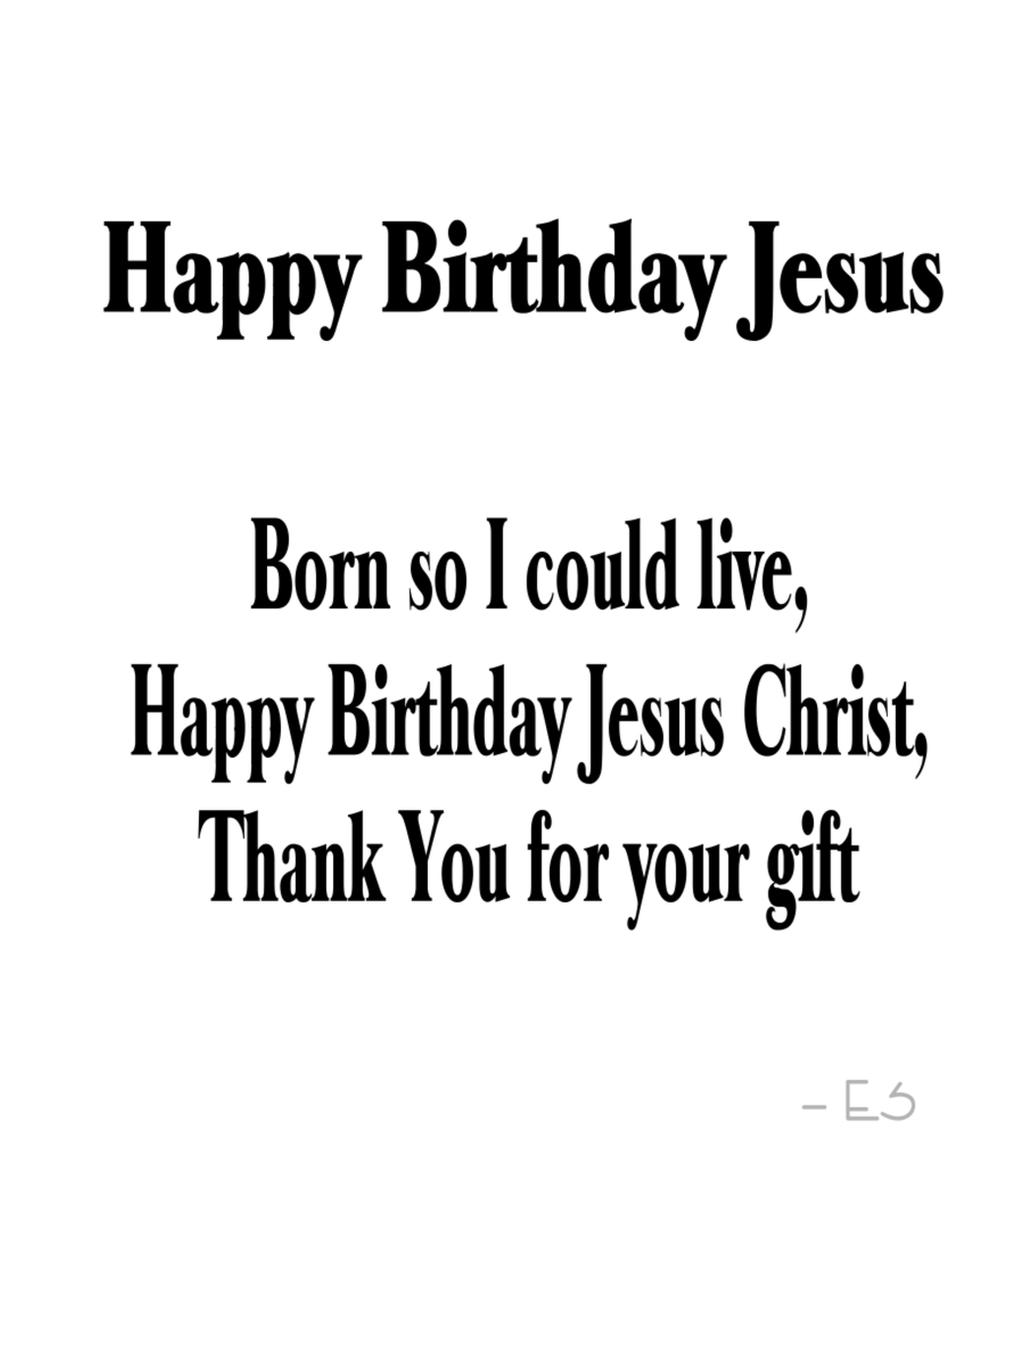 clipart name happy birthday jesus - photo #46